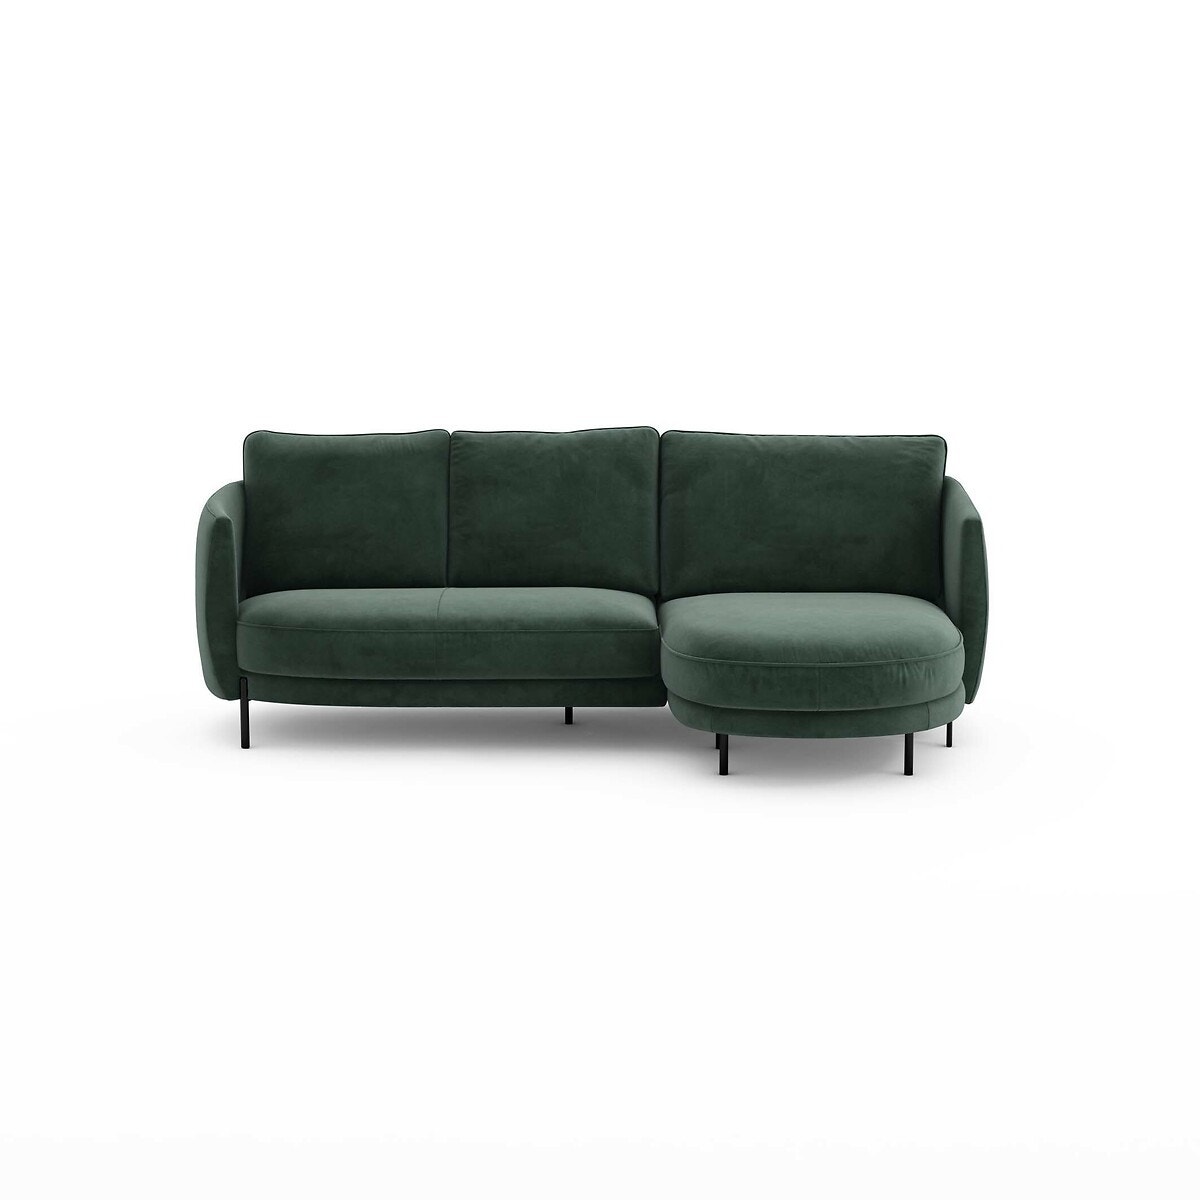 Γωνιακός καναπές από βελούδο, Arcus, σχεδίασης E.Gallina